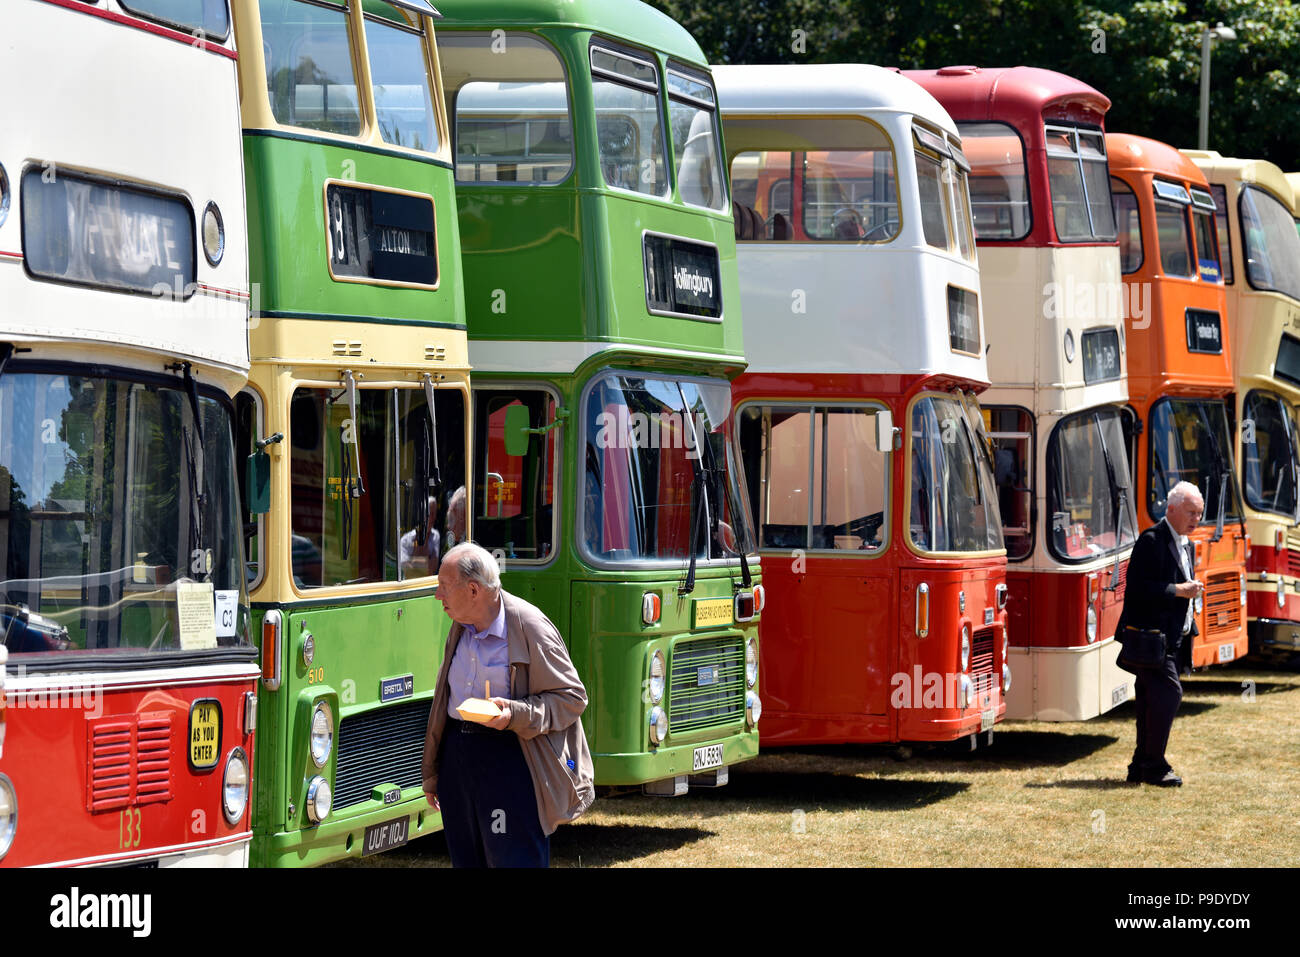 Les visiteurs participant à un rallye bus, Alton, Hampshire, Royaume-Uni. Dimanche 15 juillet 2018. Banque D'Images